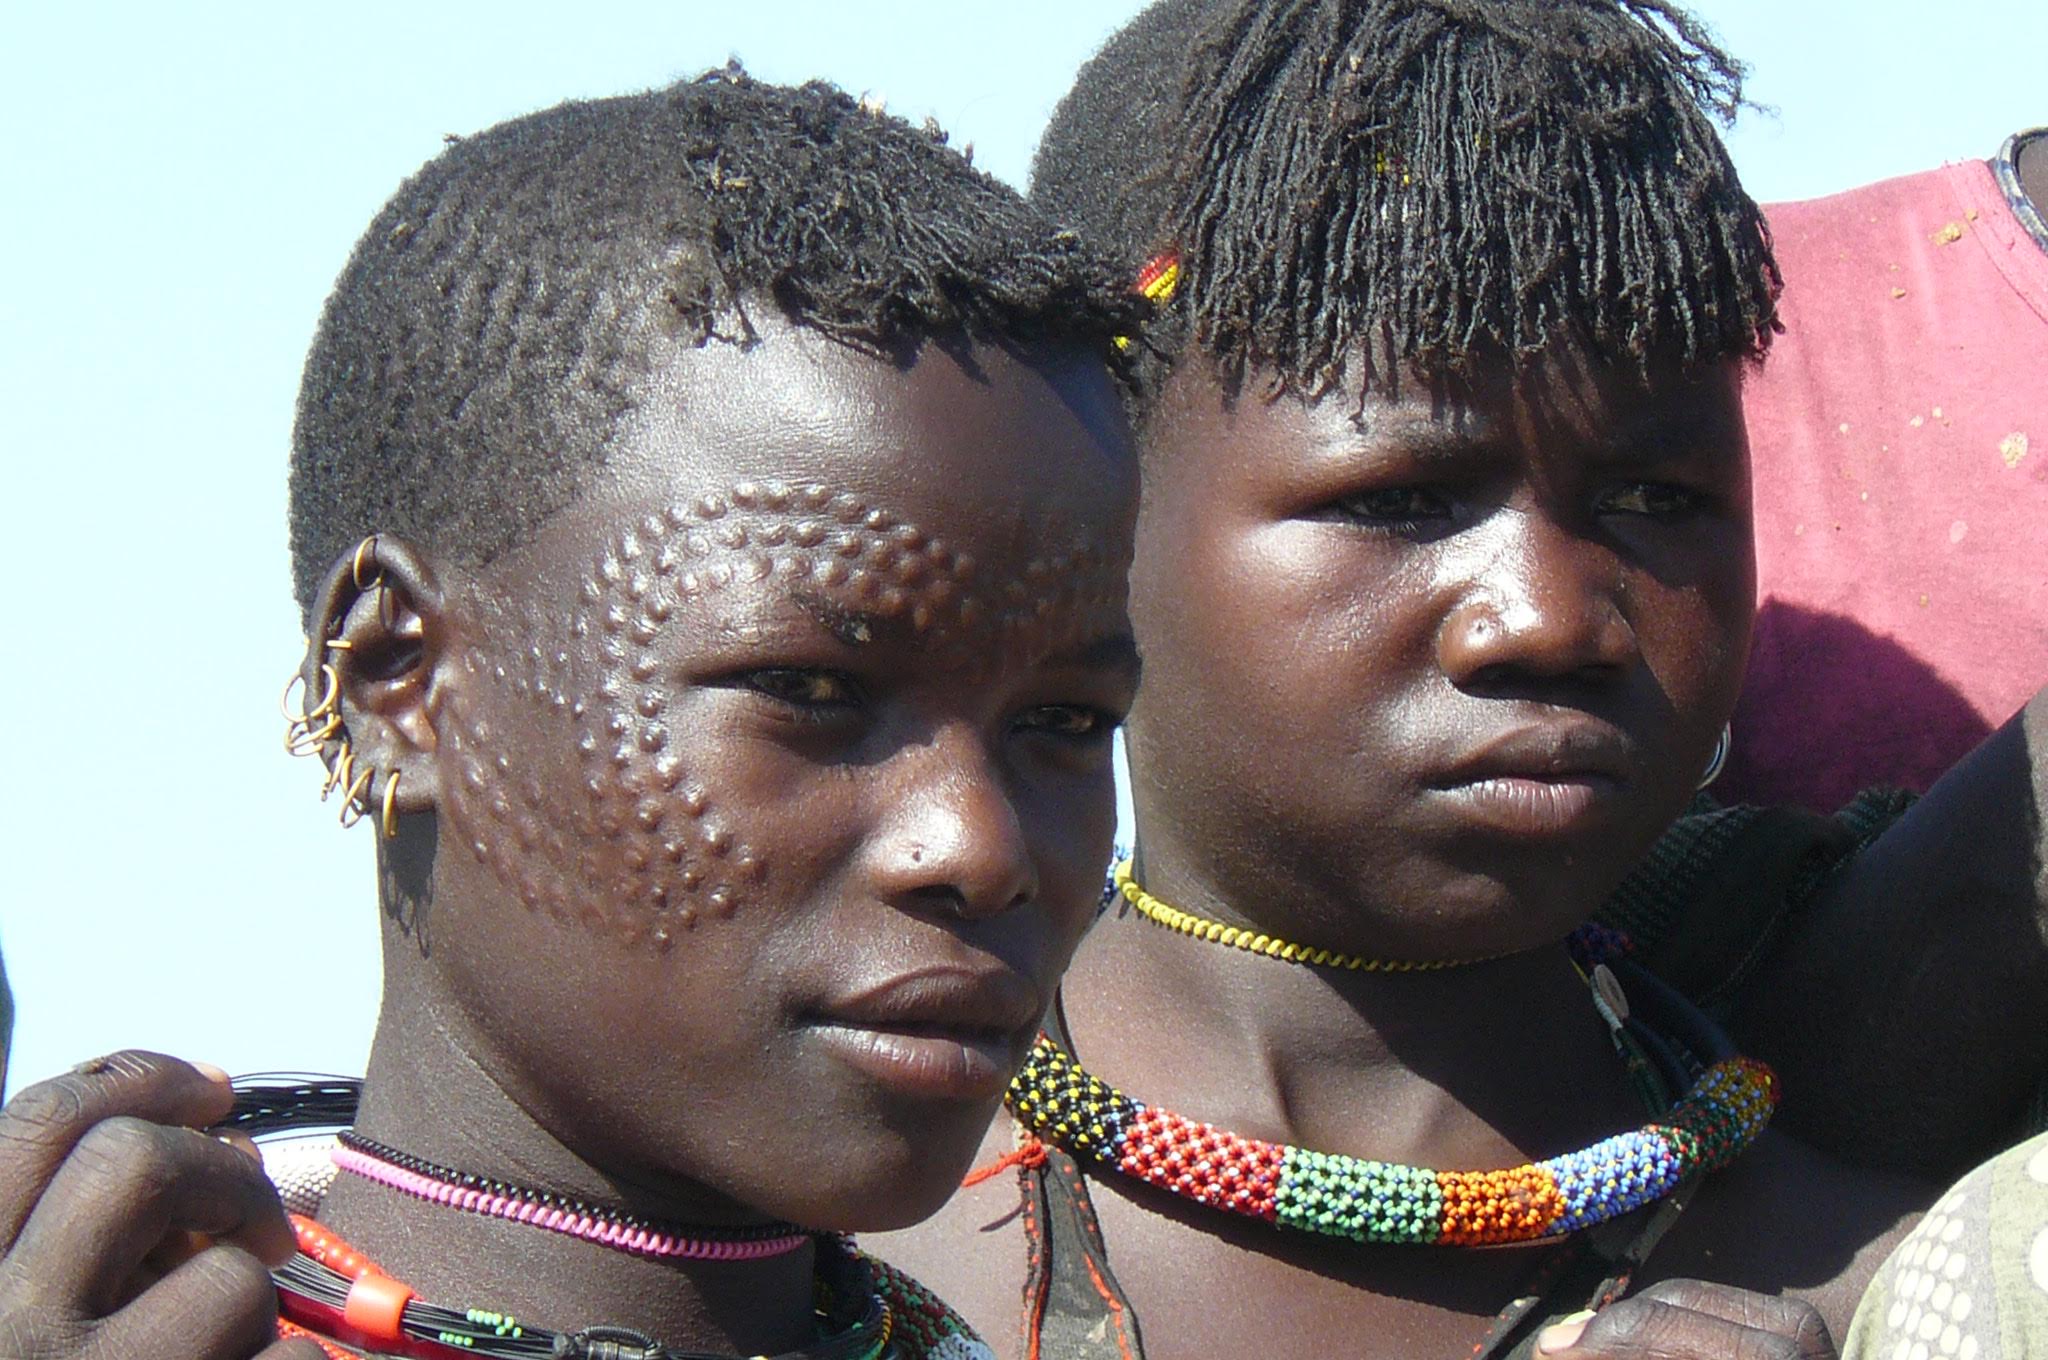 Uganda's ethnic groups